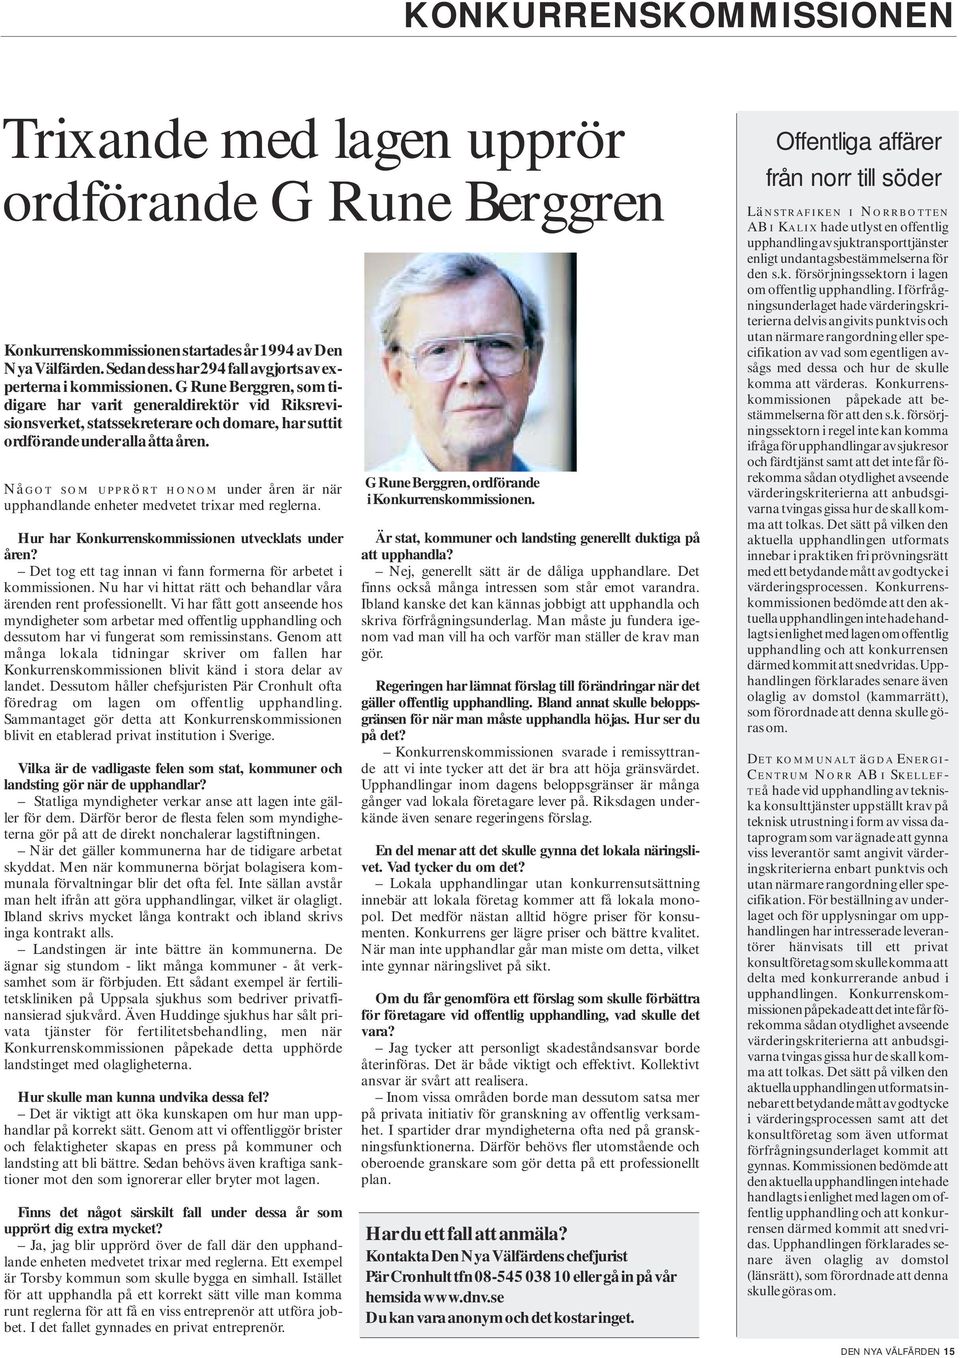 G Rune Berggren, som tidigare har varit generaldirektör vid Riksrevisionsverket, statssekreterare och domare, har suttit ordförande under alla åtta åren.